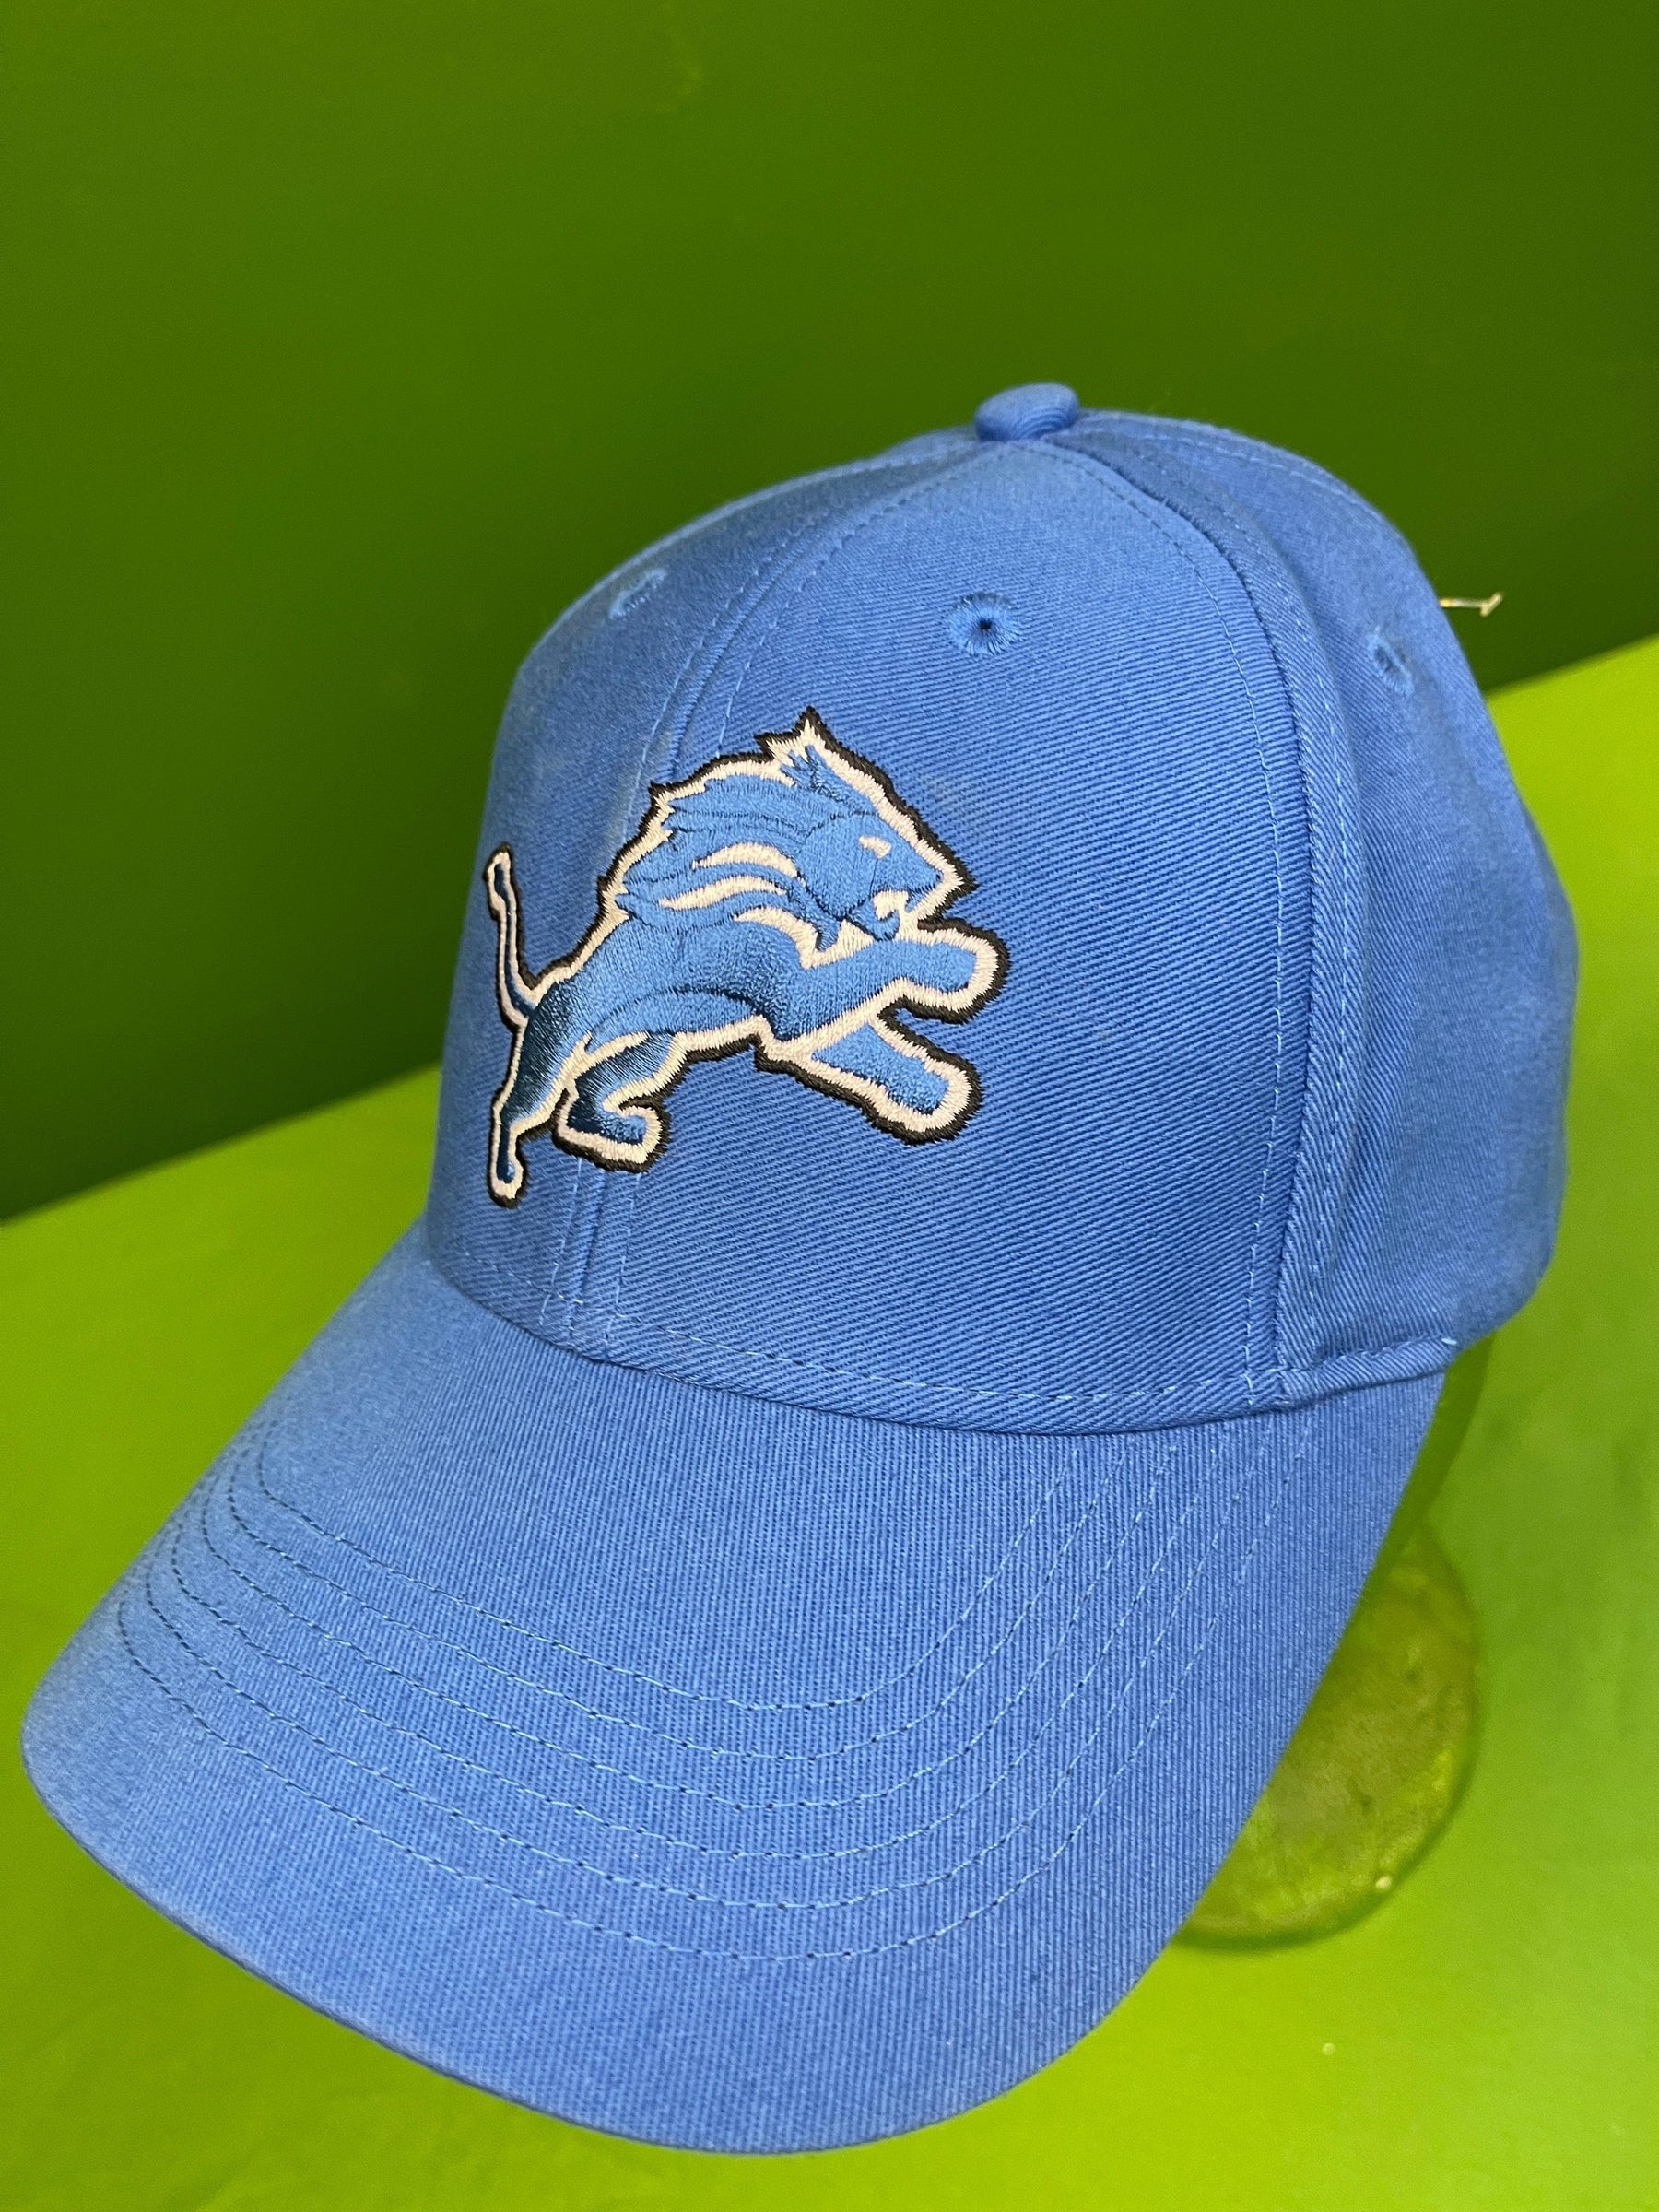 NFL Detroit Lions Blue Cotton Cap/Hat Youth OSFM Appx. 6-14